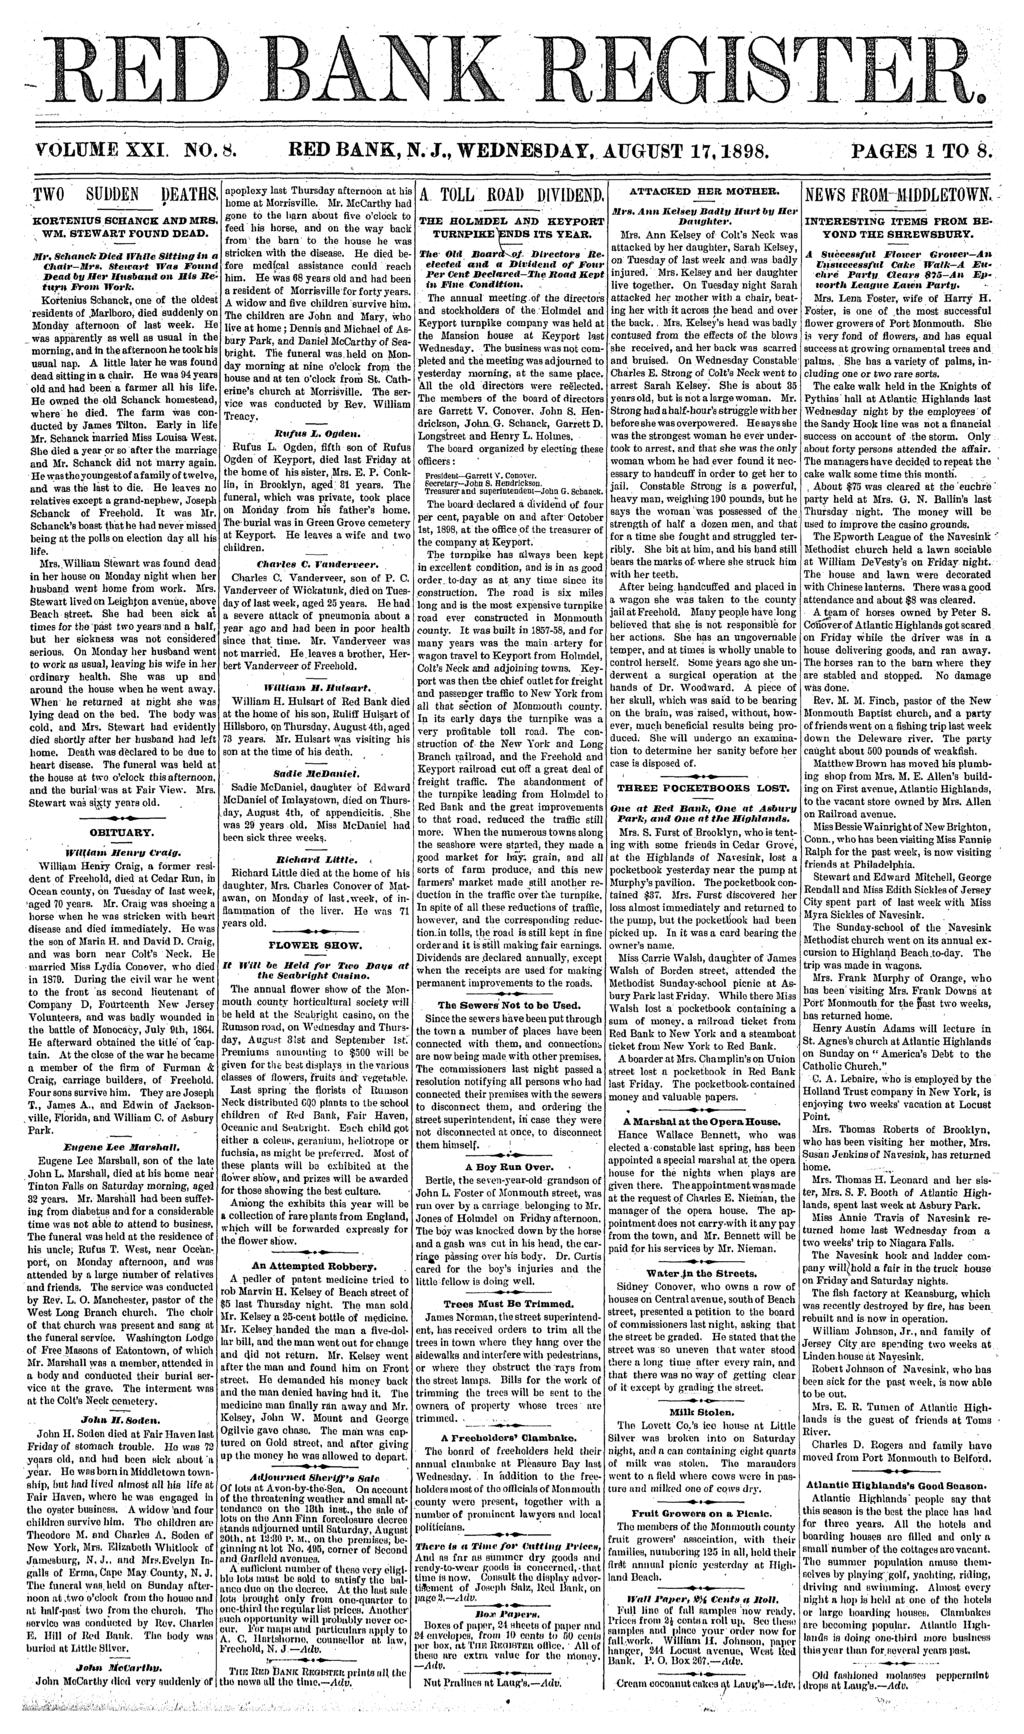 VOLUME XX. NO. 8. RED BANK, N. J., WEDNESDAY, AUGUST 17,1898. PAGES 1 TO 8. TWO SUDDEN DEATHS, KORTENUS SCHANCK AND MBS, WM, STEWART FOUND DEAD.